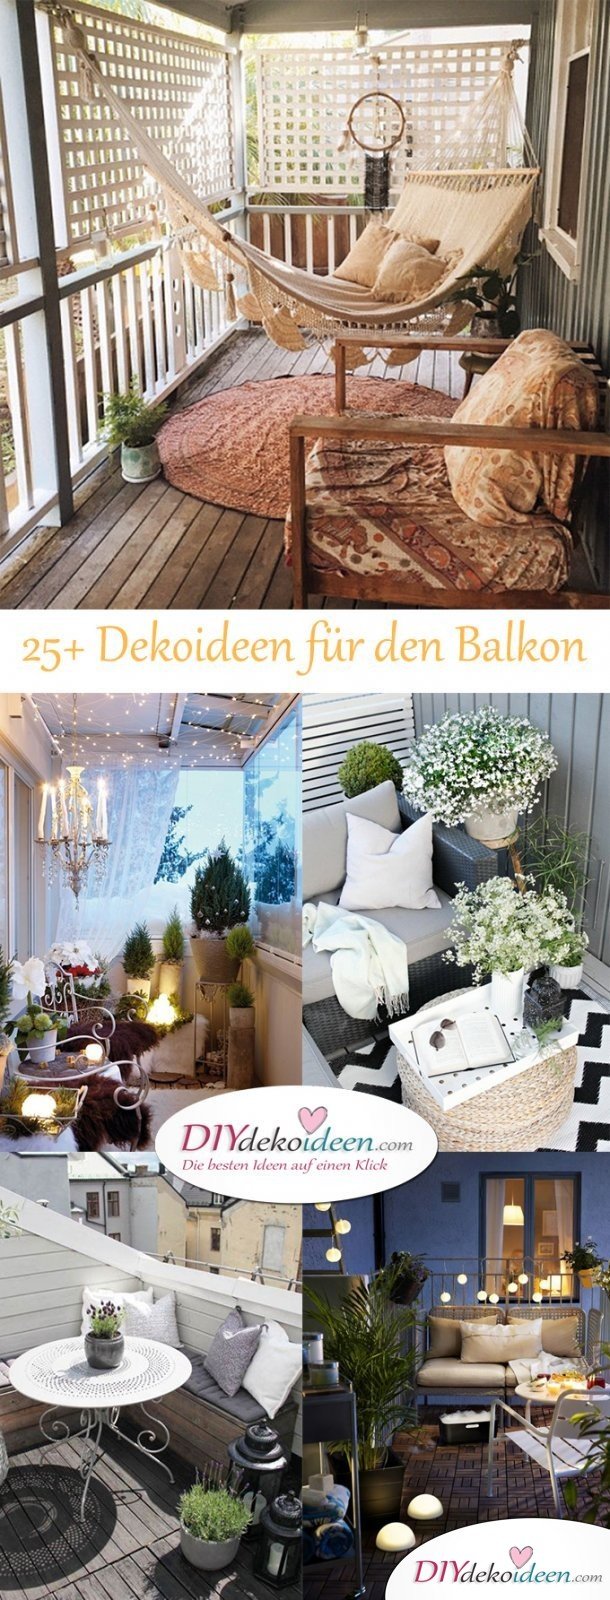 DIY Dekoideen für dein Zuhause - Balkon dekorieren